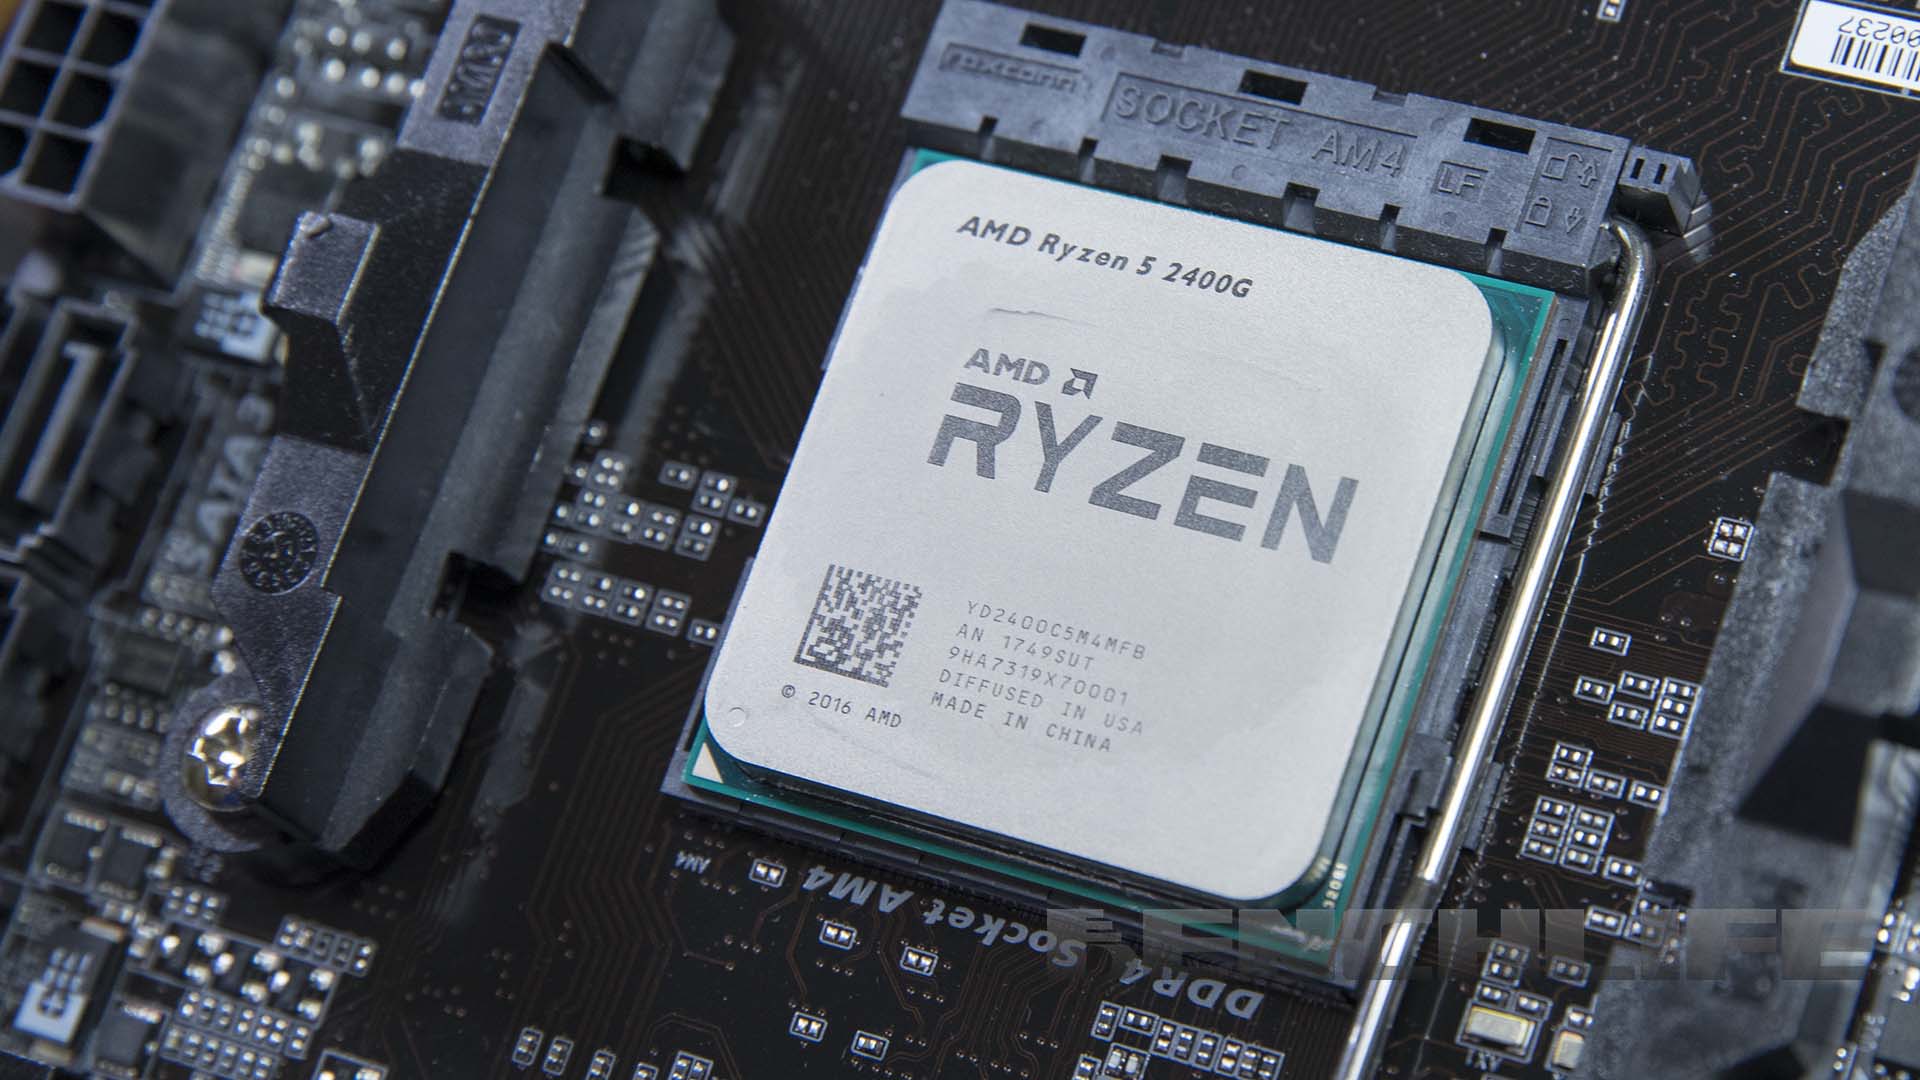 Райзен какой сокет. AMD Ryzen 5 2400g. AMD Ryzen 5 Pro 2400g. AMD Risen 5 2400g. Yzen 2200g.